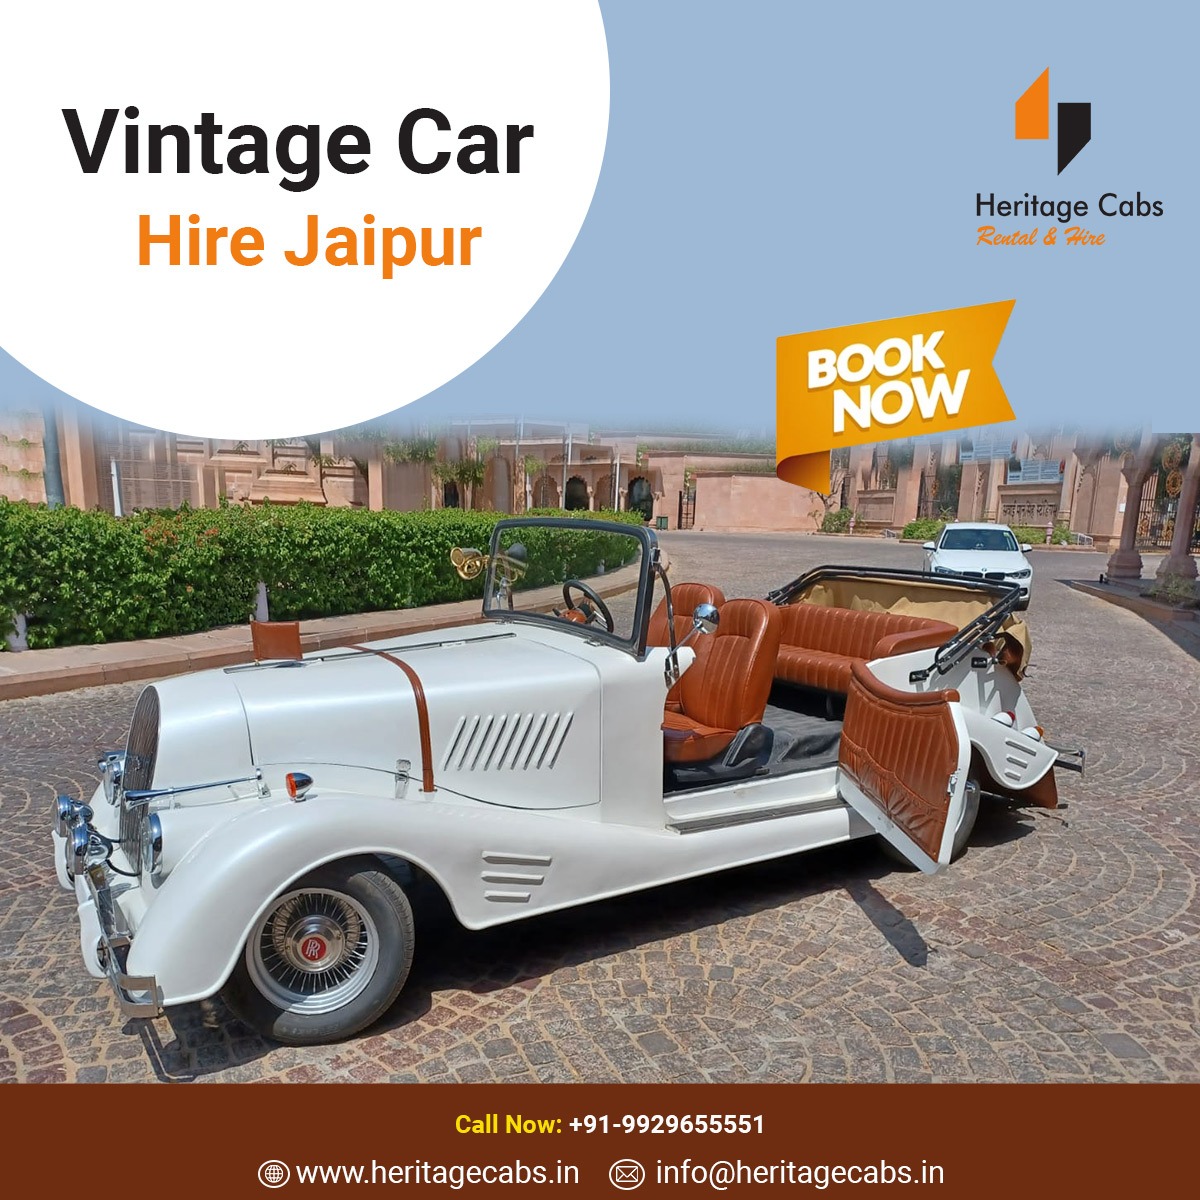 Vintage Car Hire Jaipur